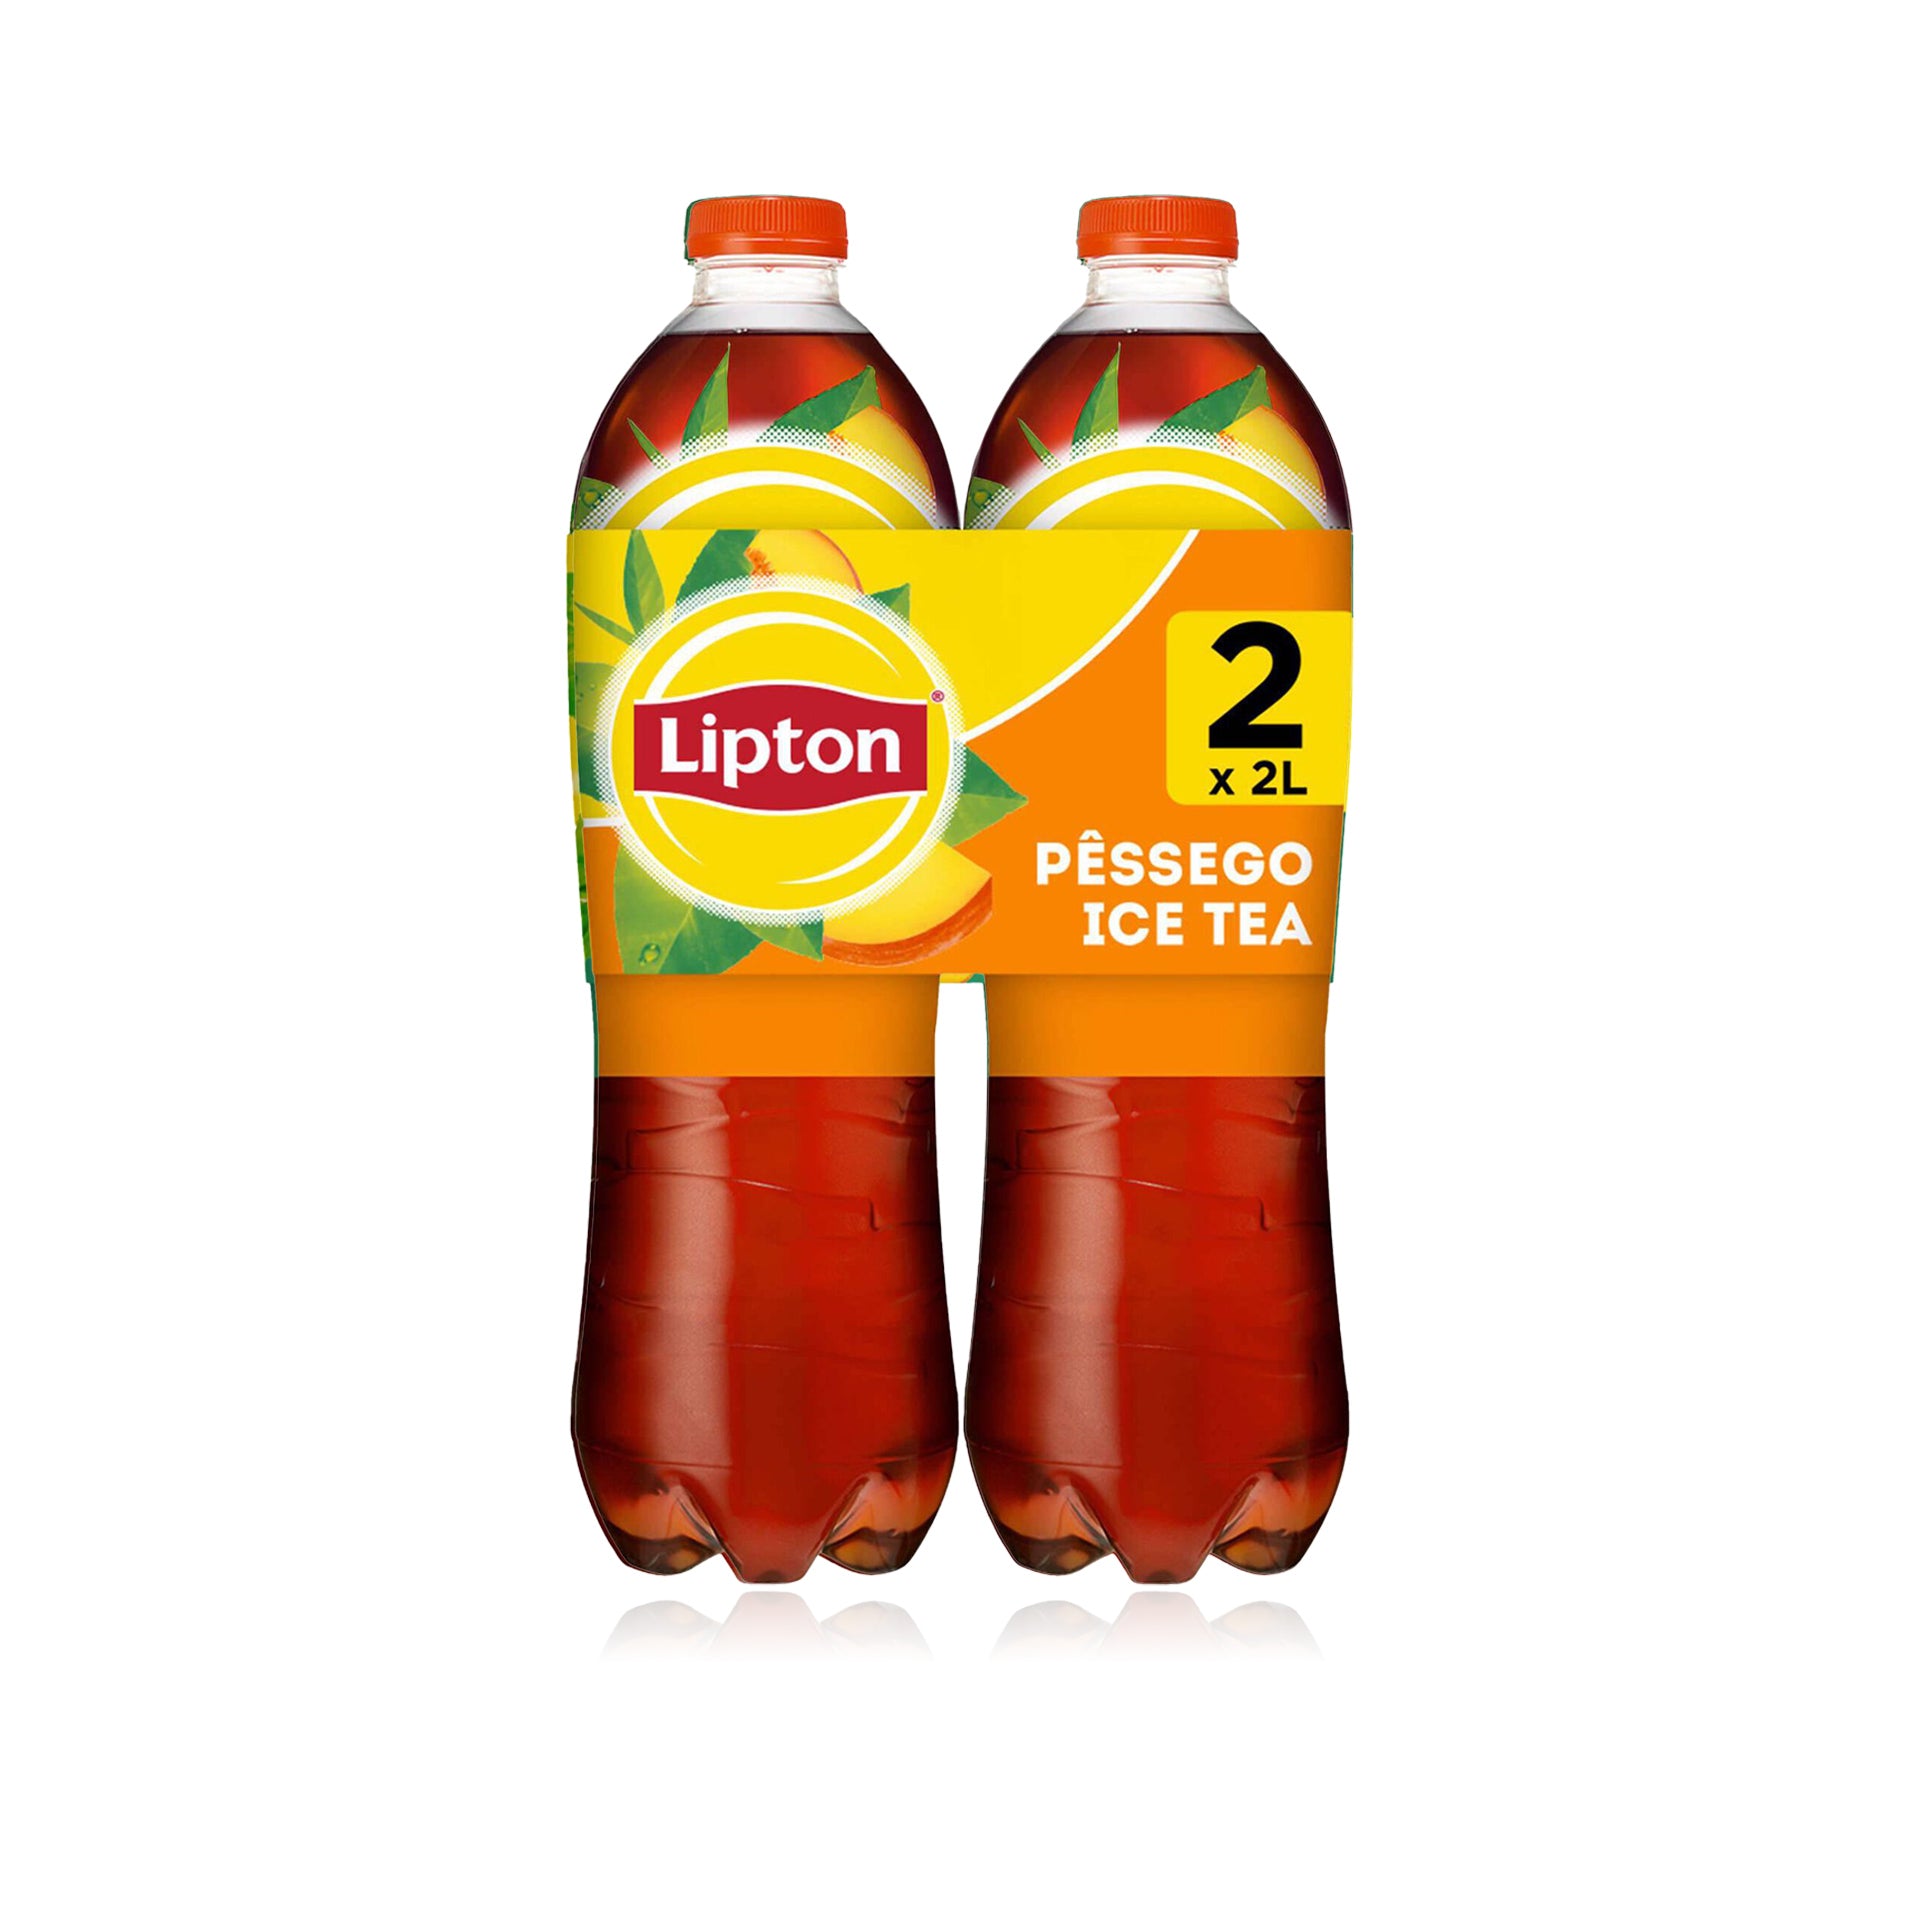 Lipton Ice Tea Pêssego 2 L - Pack 2 x 2 L